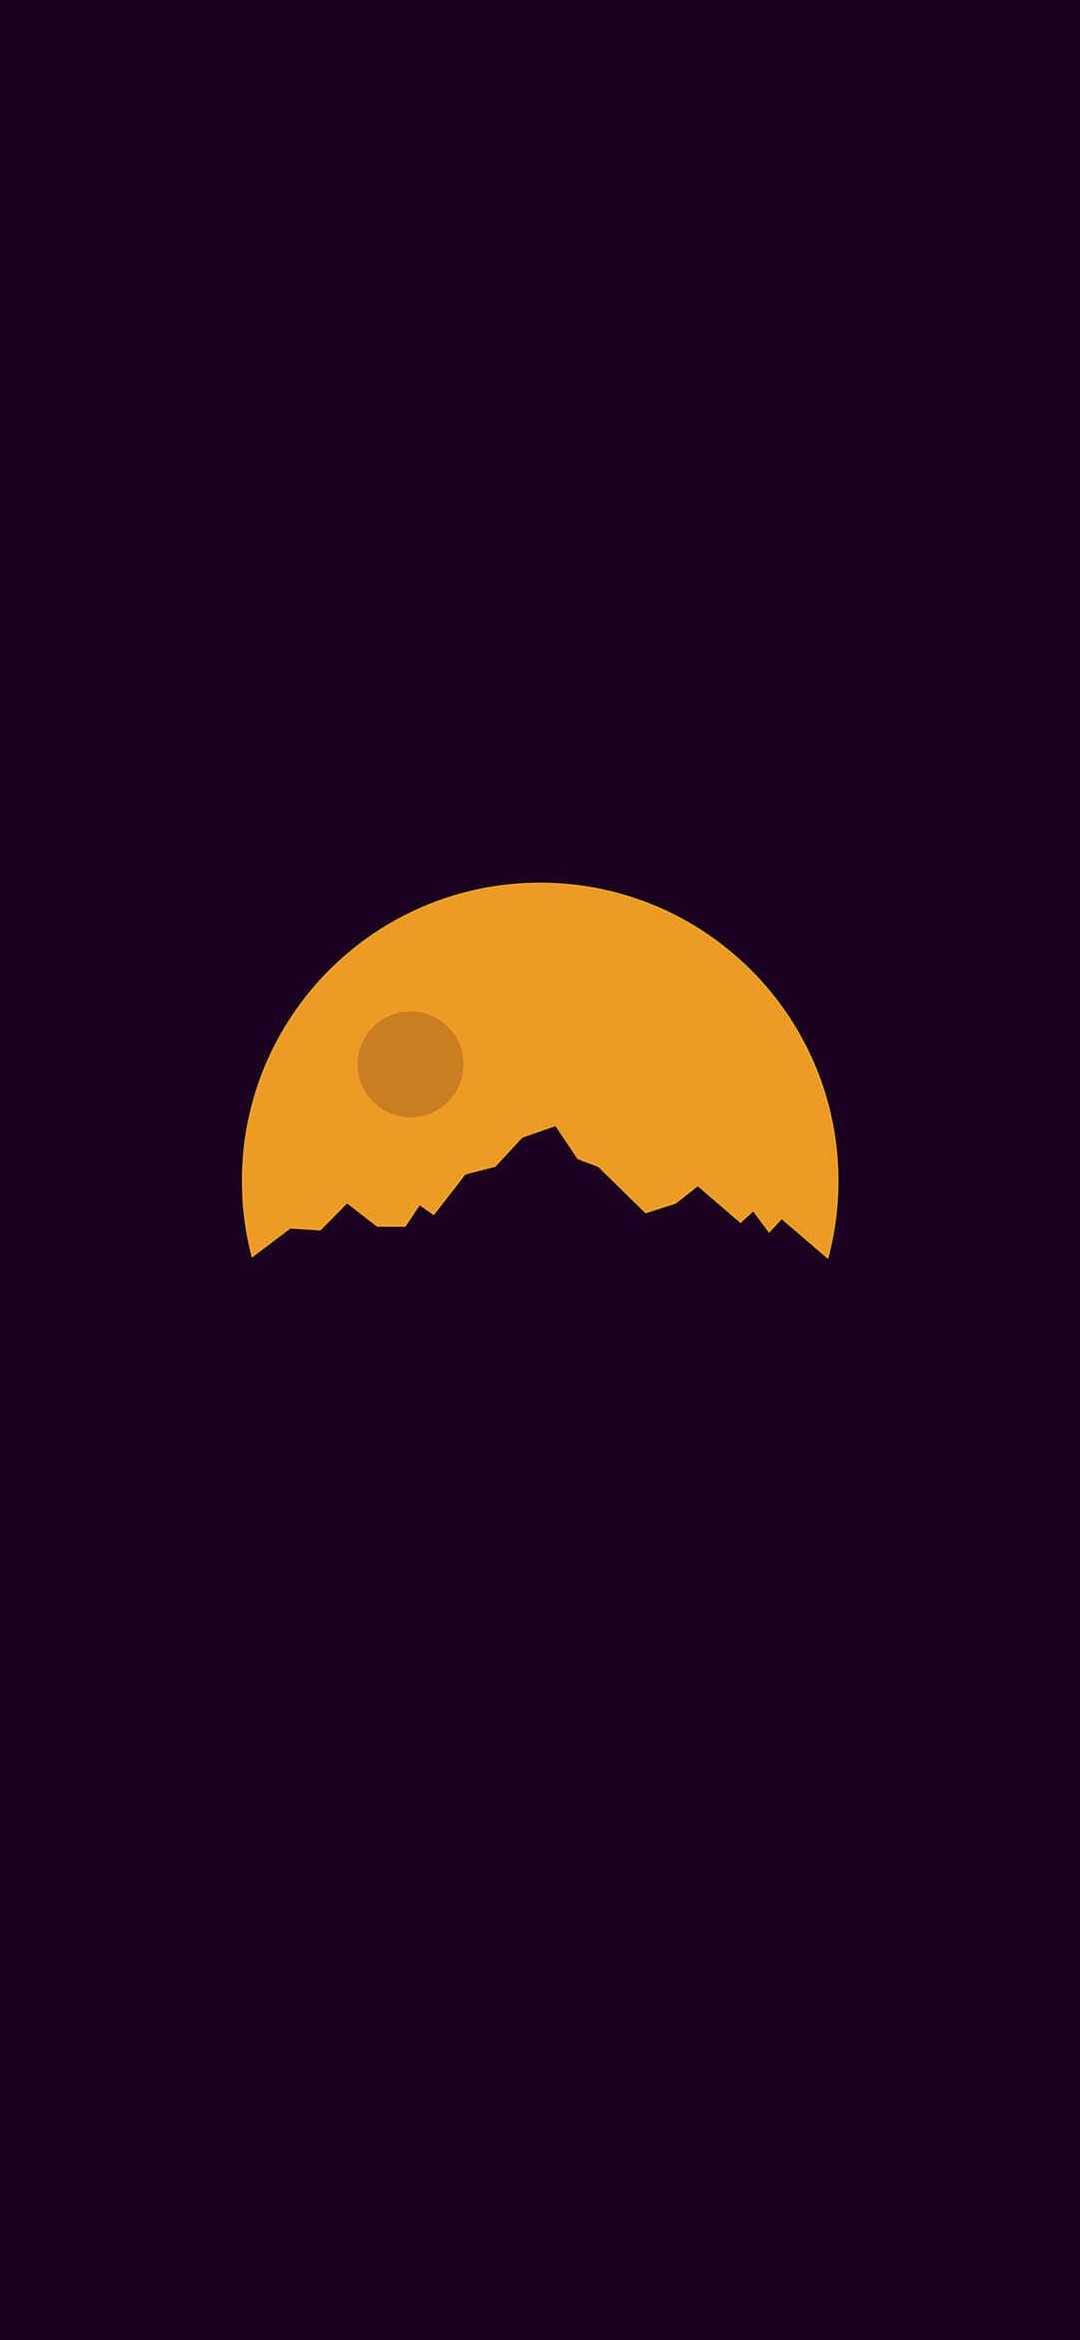 紫の山と黄色い満月のイラスト Redmagic 5 Android スマホ壁紙 待ち受け スマラン